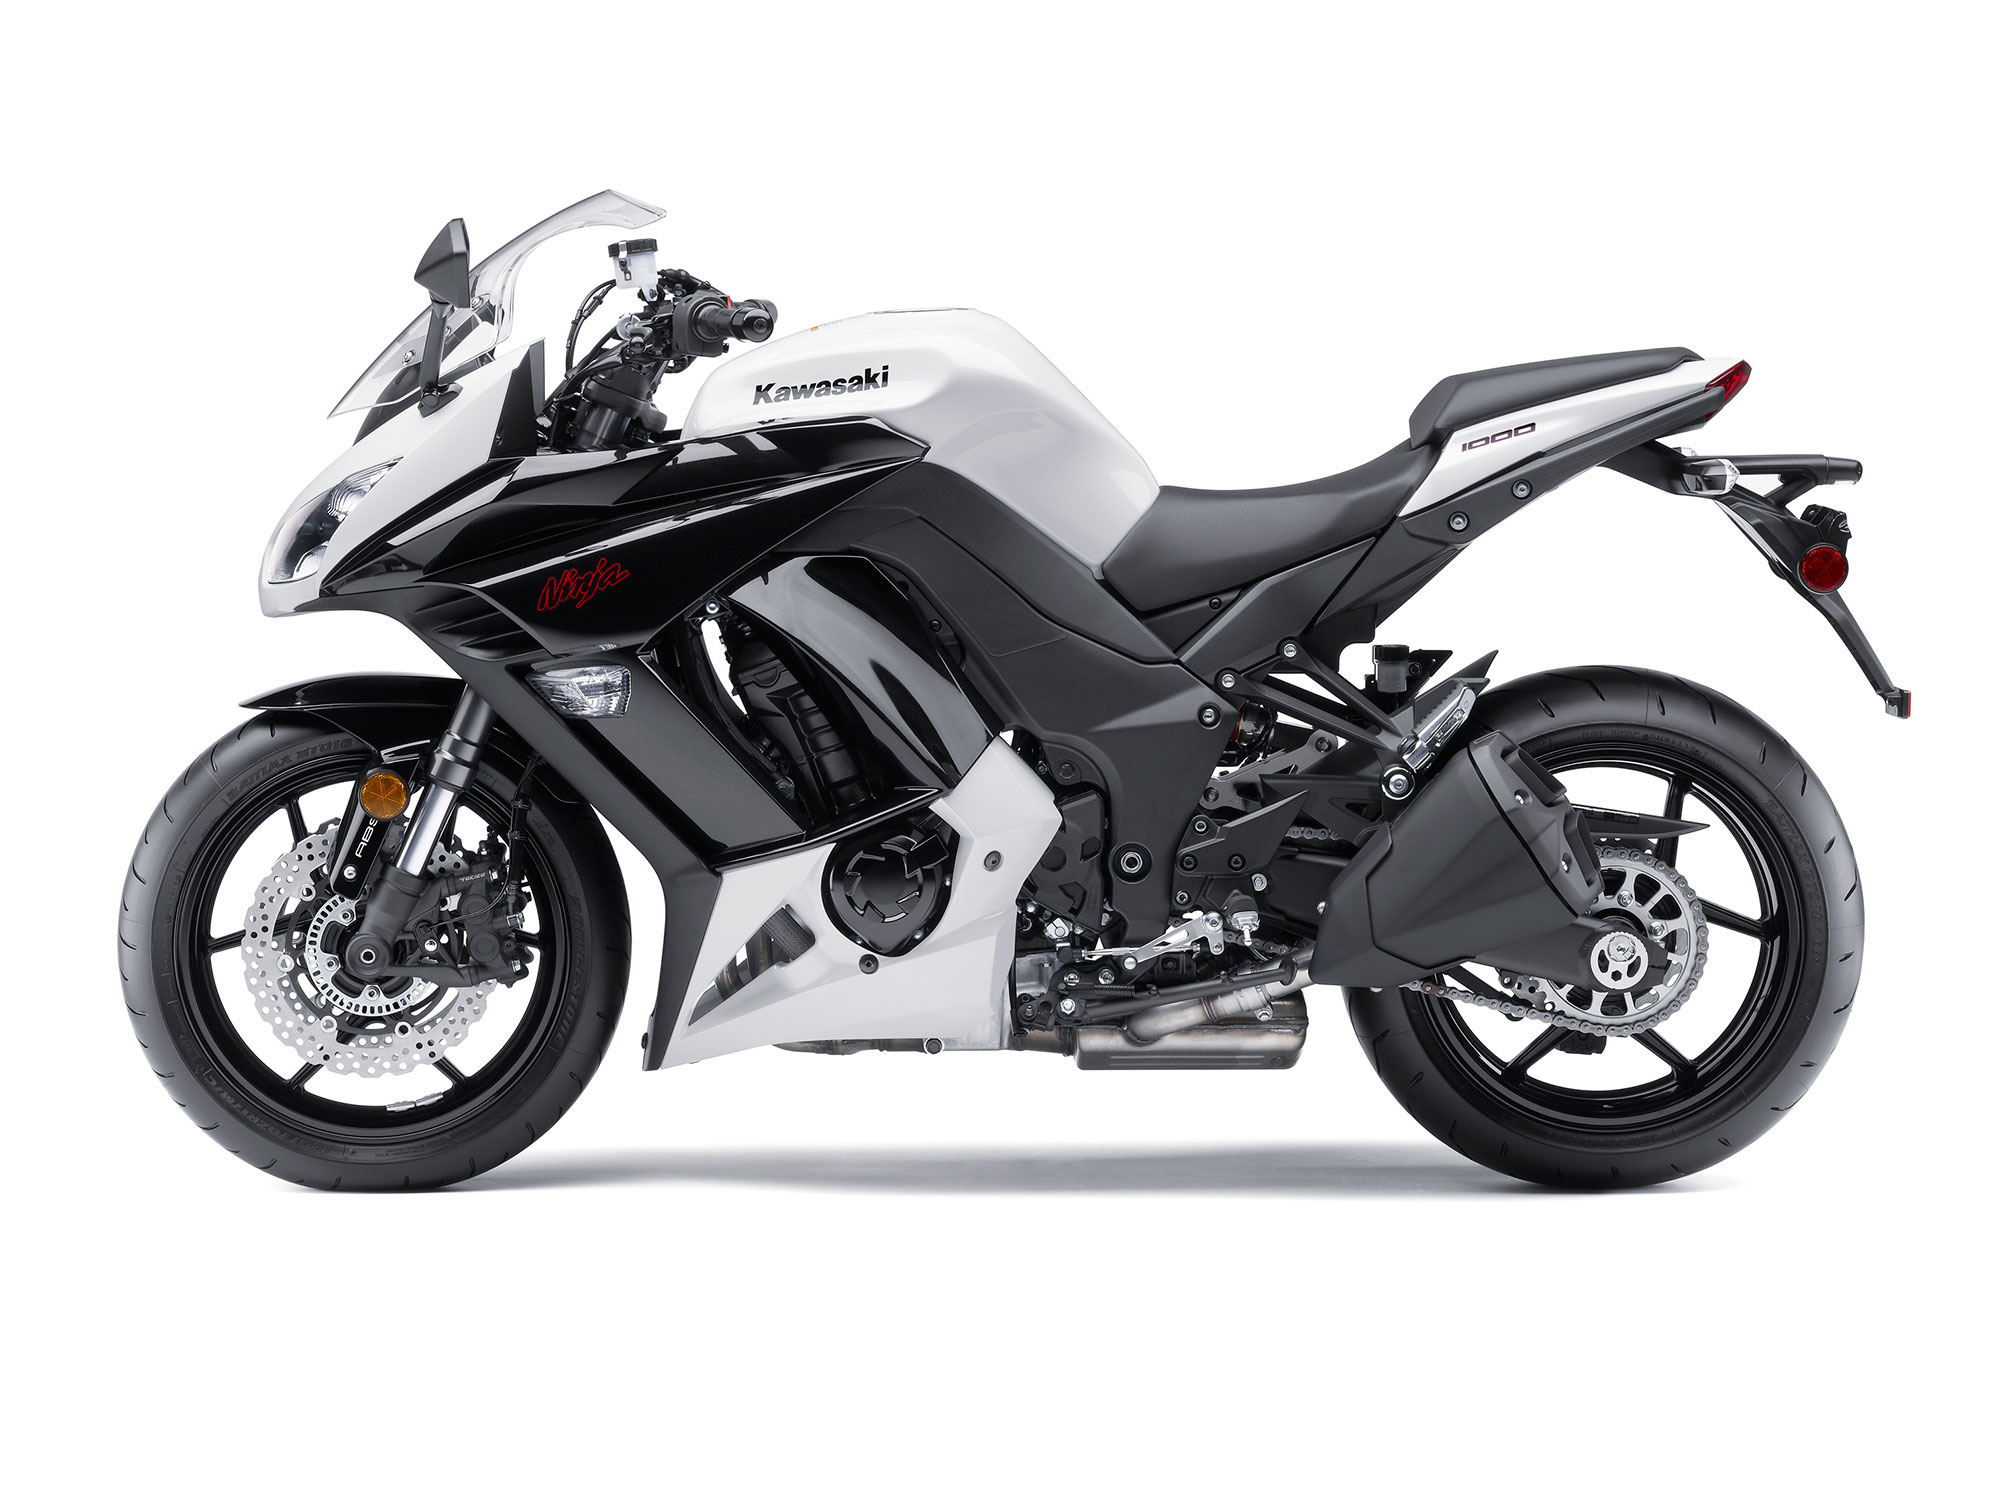 Kawasaki Ninja 1000 abs, Motorcycle review, Superior handling, Riding experience, 2020x1510 HD Desktop